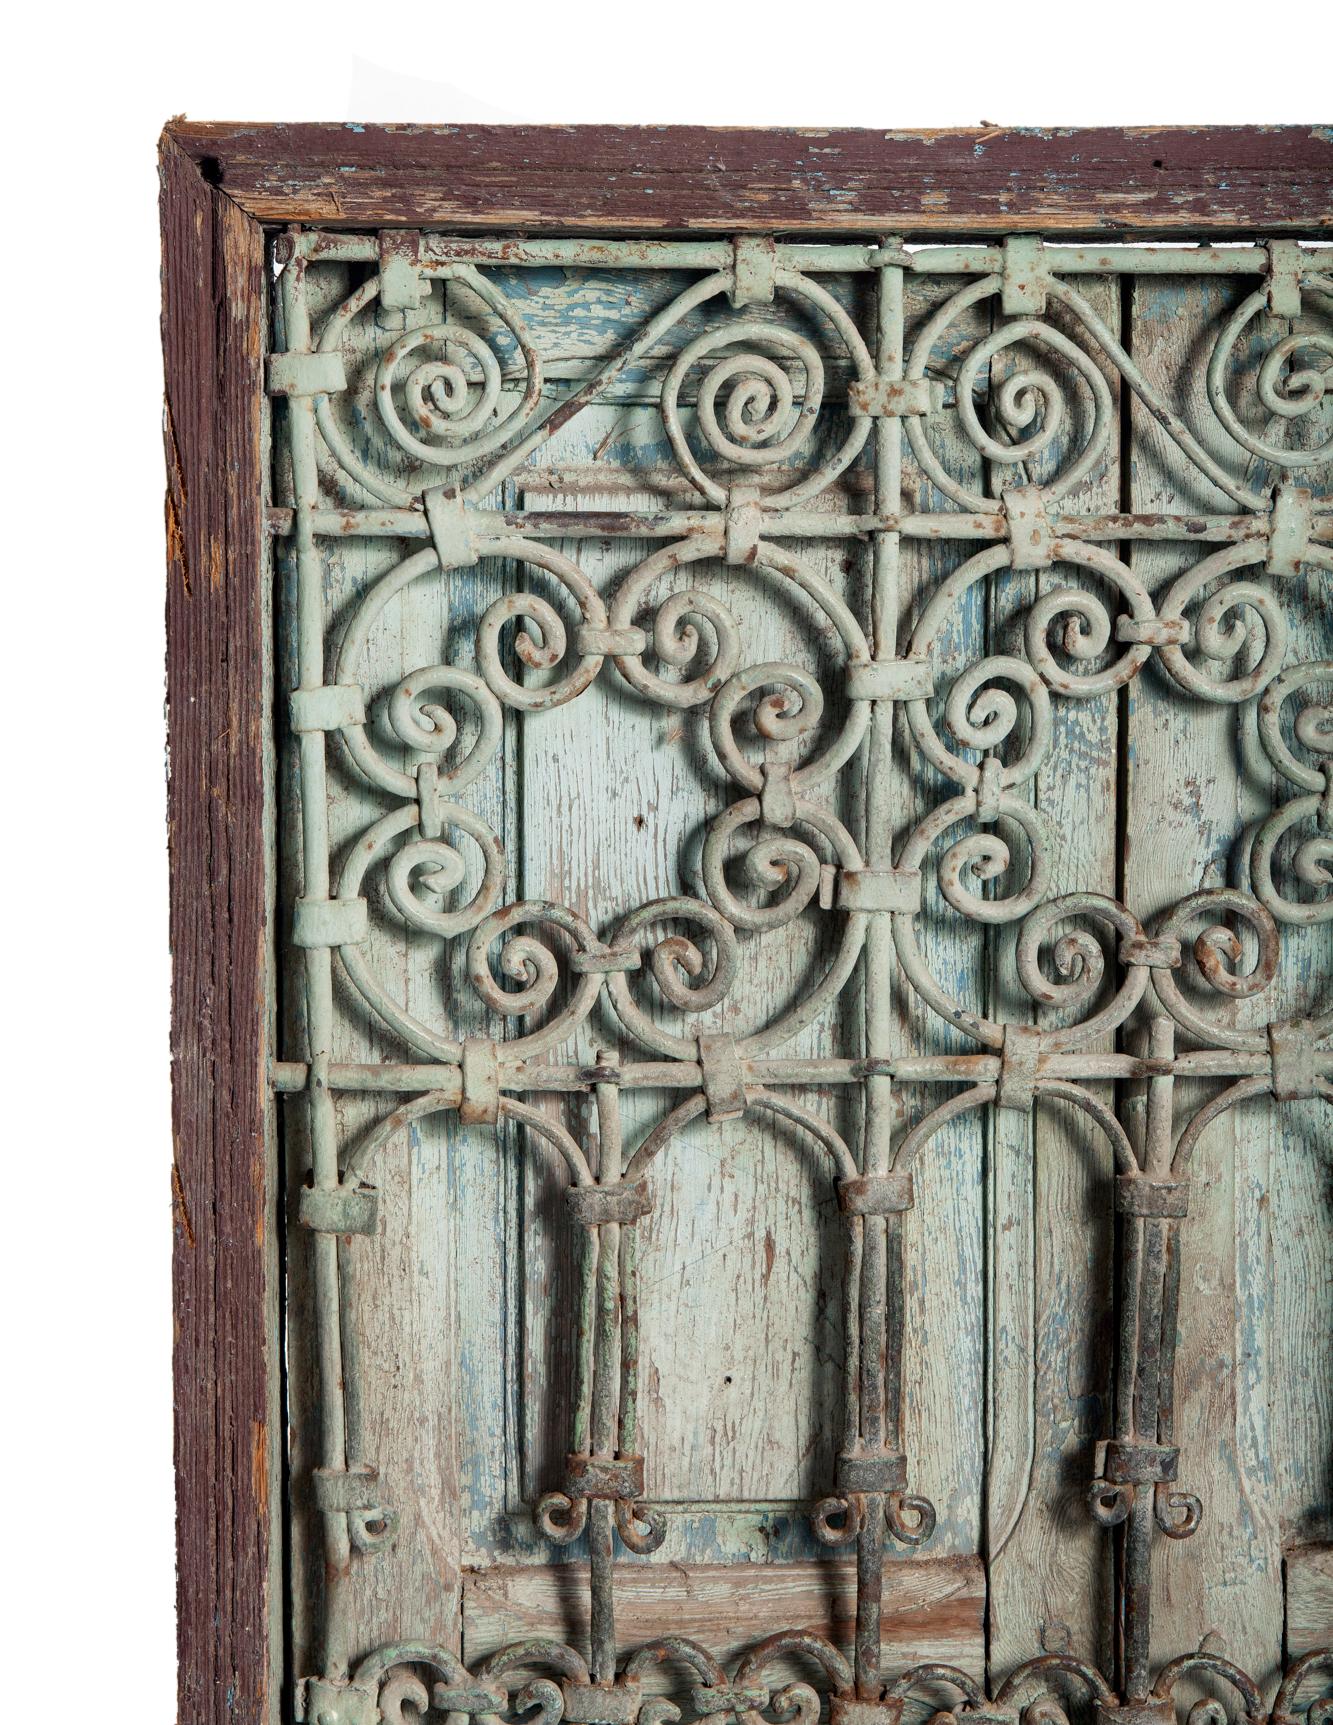 Une fenêtre marocaine du début du 19e siècle, antique et usée par les intempéries, avec ses volets d'origine. Le fer forgé à la main au début des années 1800 est patiné par les intempéries en vert pâle.
conserve encore sa peinture d'origine